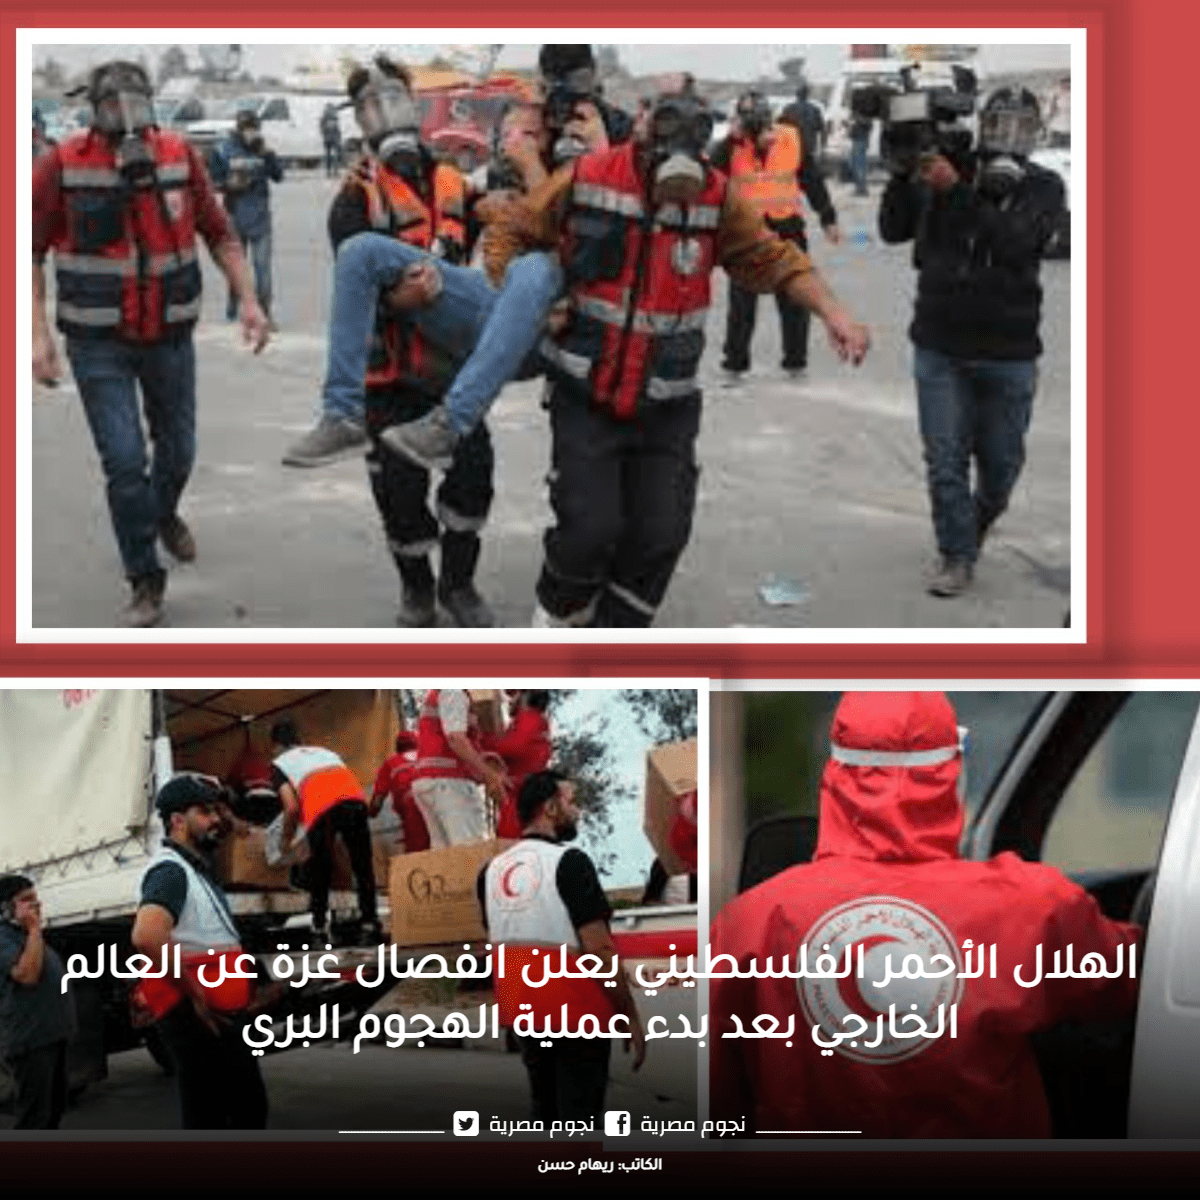 صور لدور الهلال الأحمر الفلسطيني قبل انقطاع الاتصال